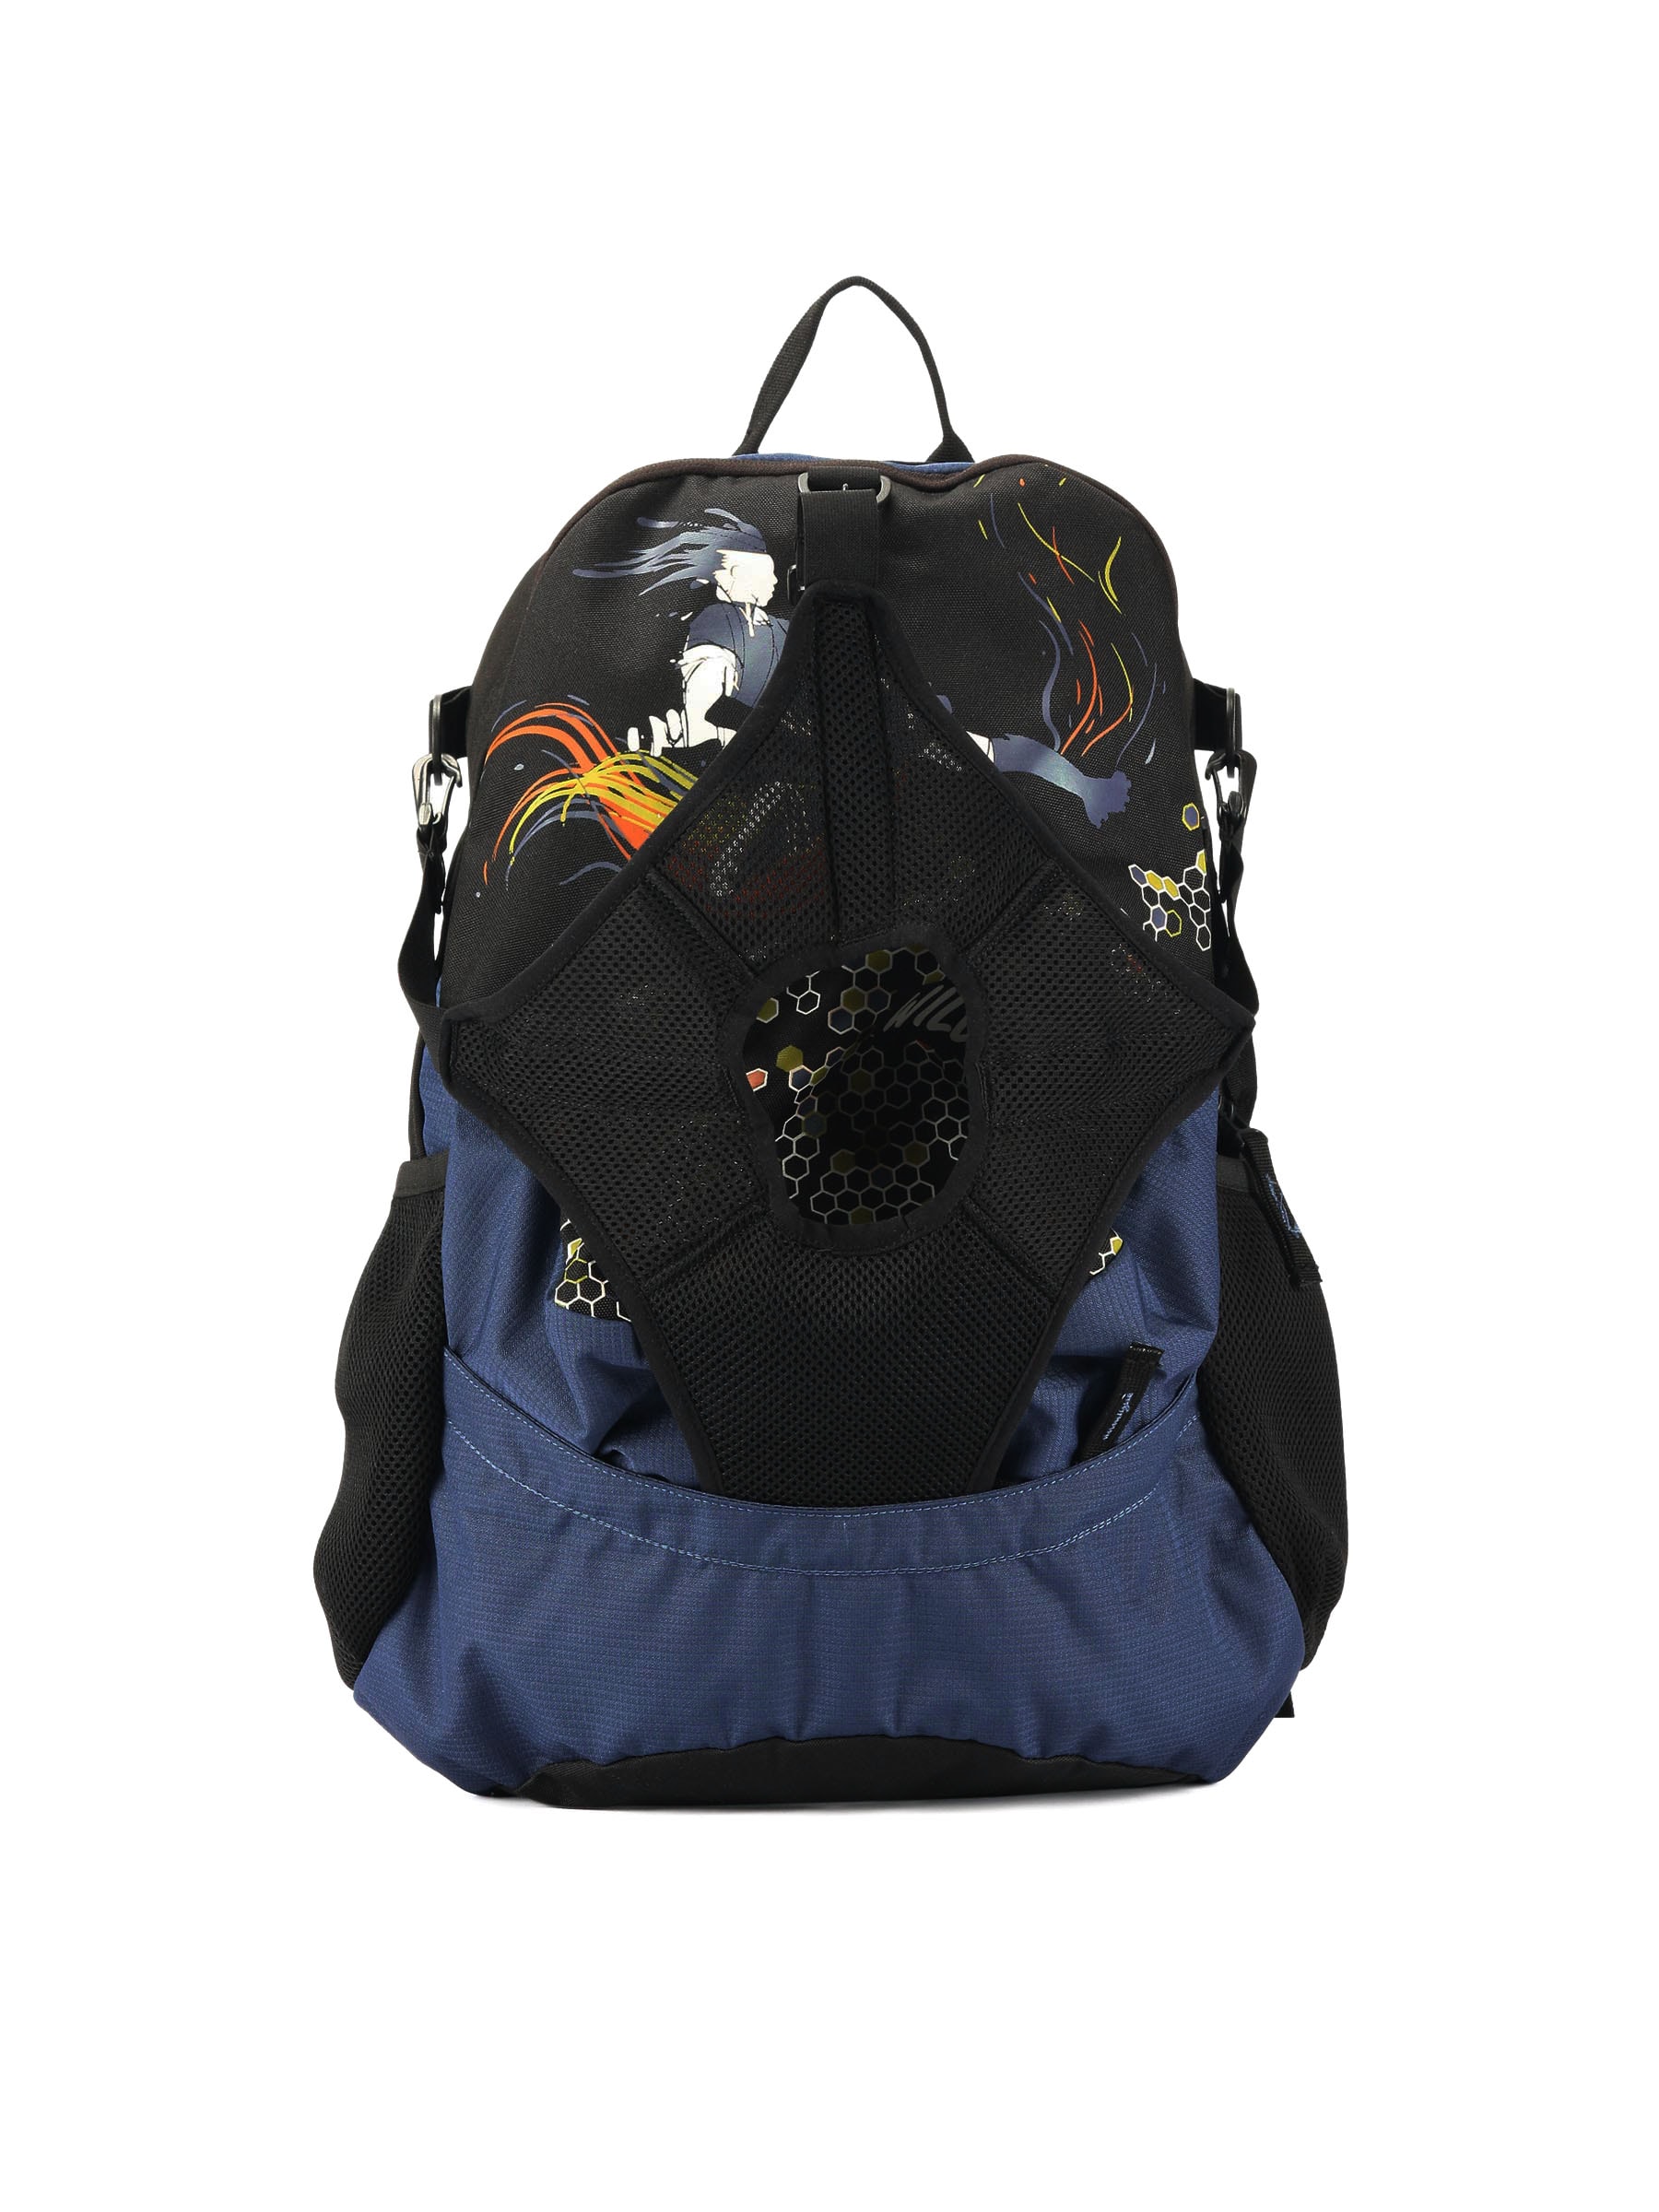 Wildcraft Unisex Blue Printed Backpack